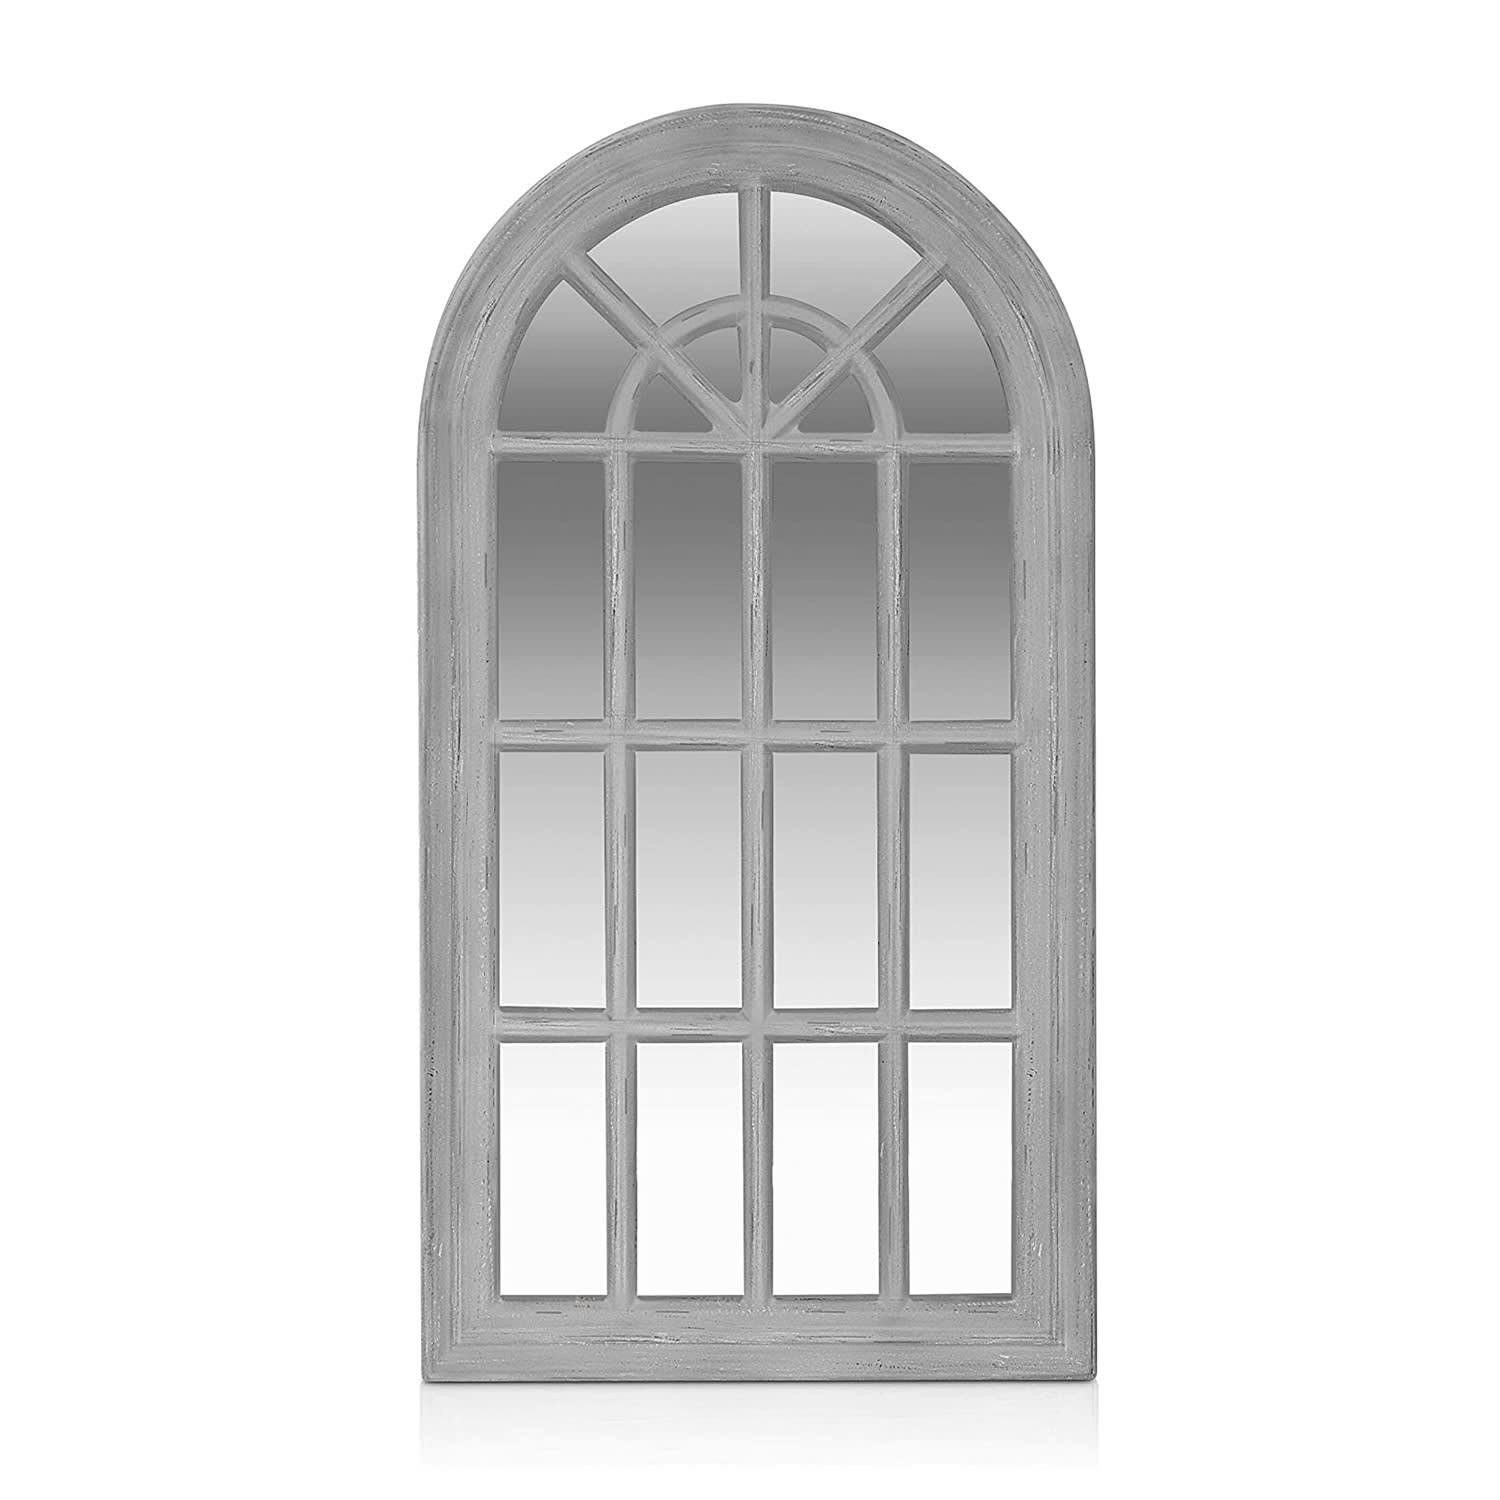 Spiegel Casa 46 cm Grau Savile 86 | Französischer Chic Fensterspiegel x Grau